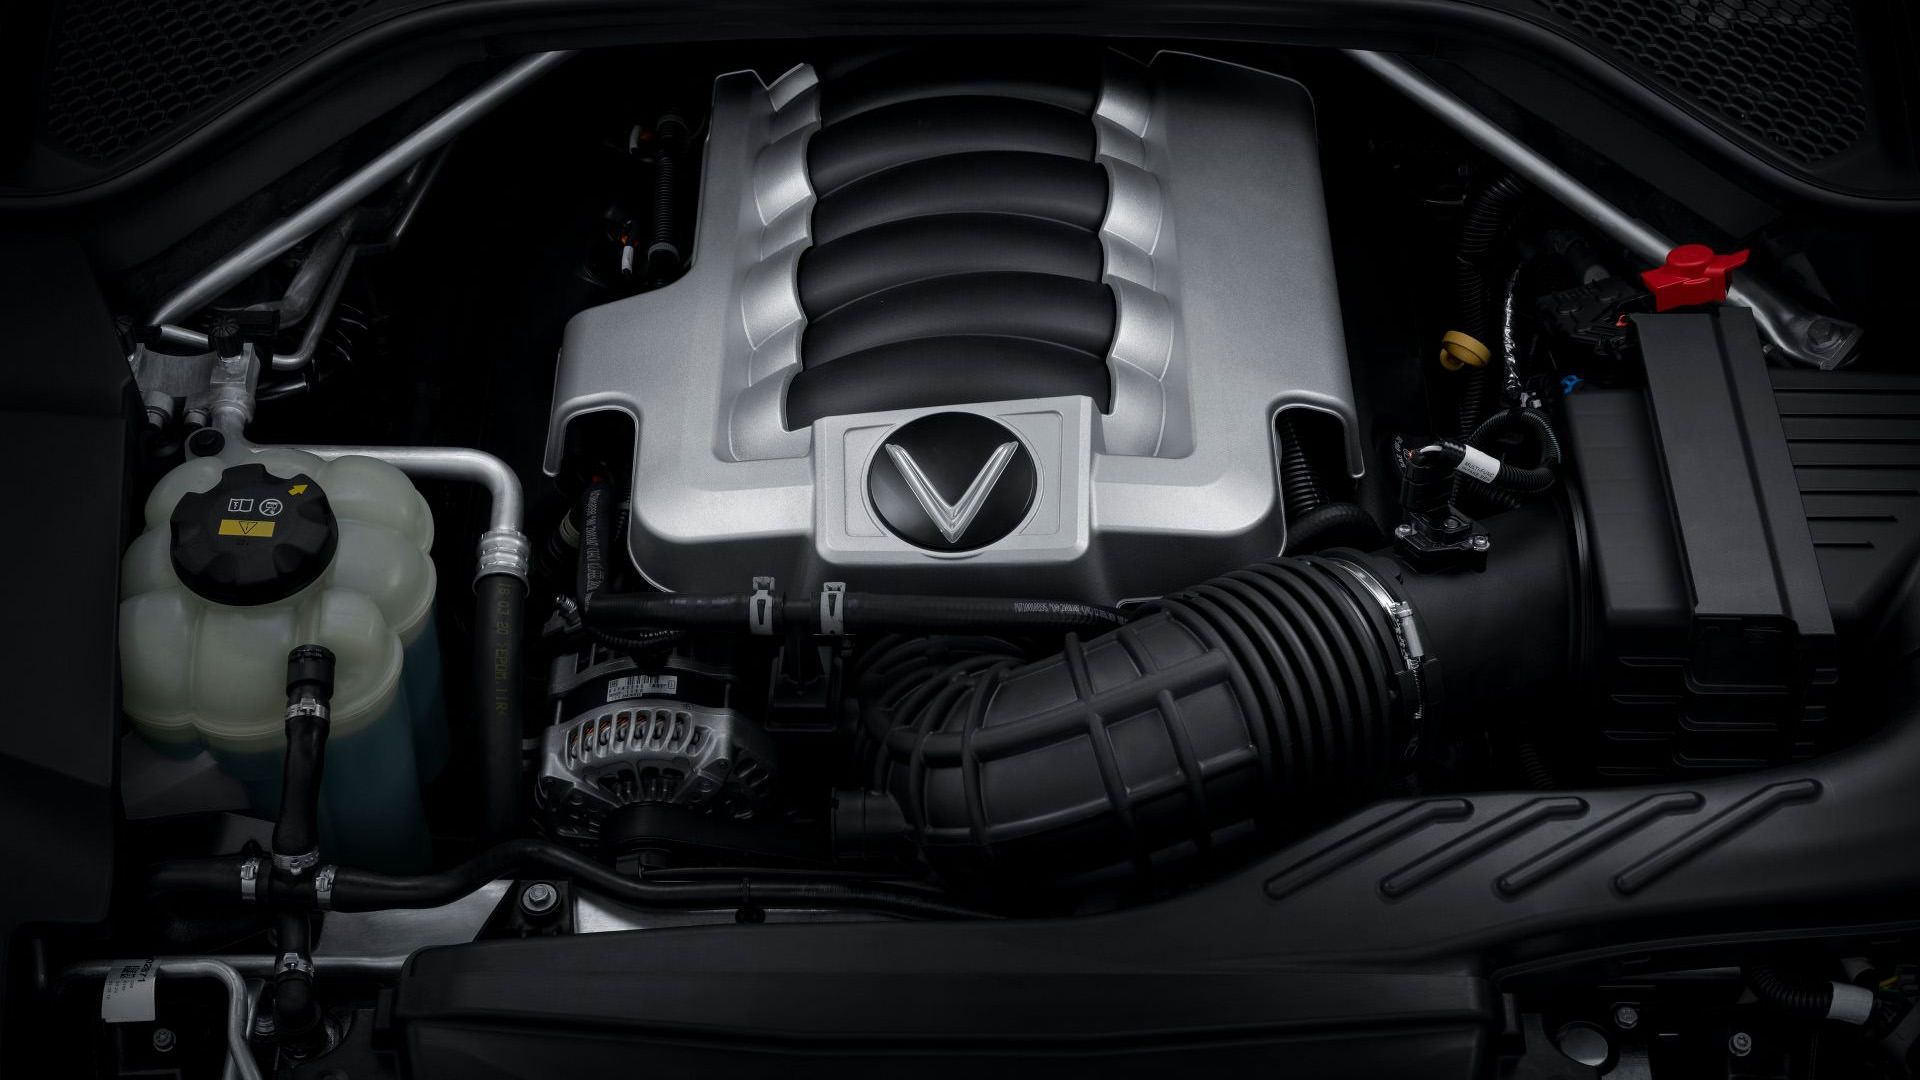 مرجع متخصصين ايران پيشرانه شاسي بلند لوكس وين فست پرزيدنت / VinFast President Luxury SUV